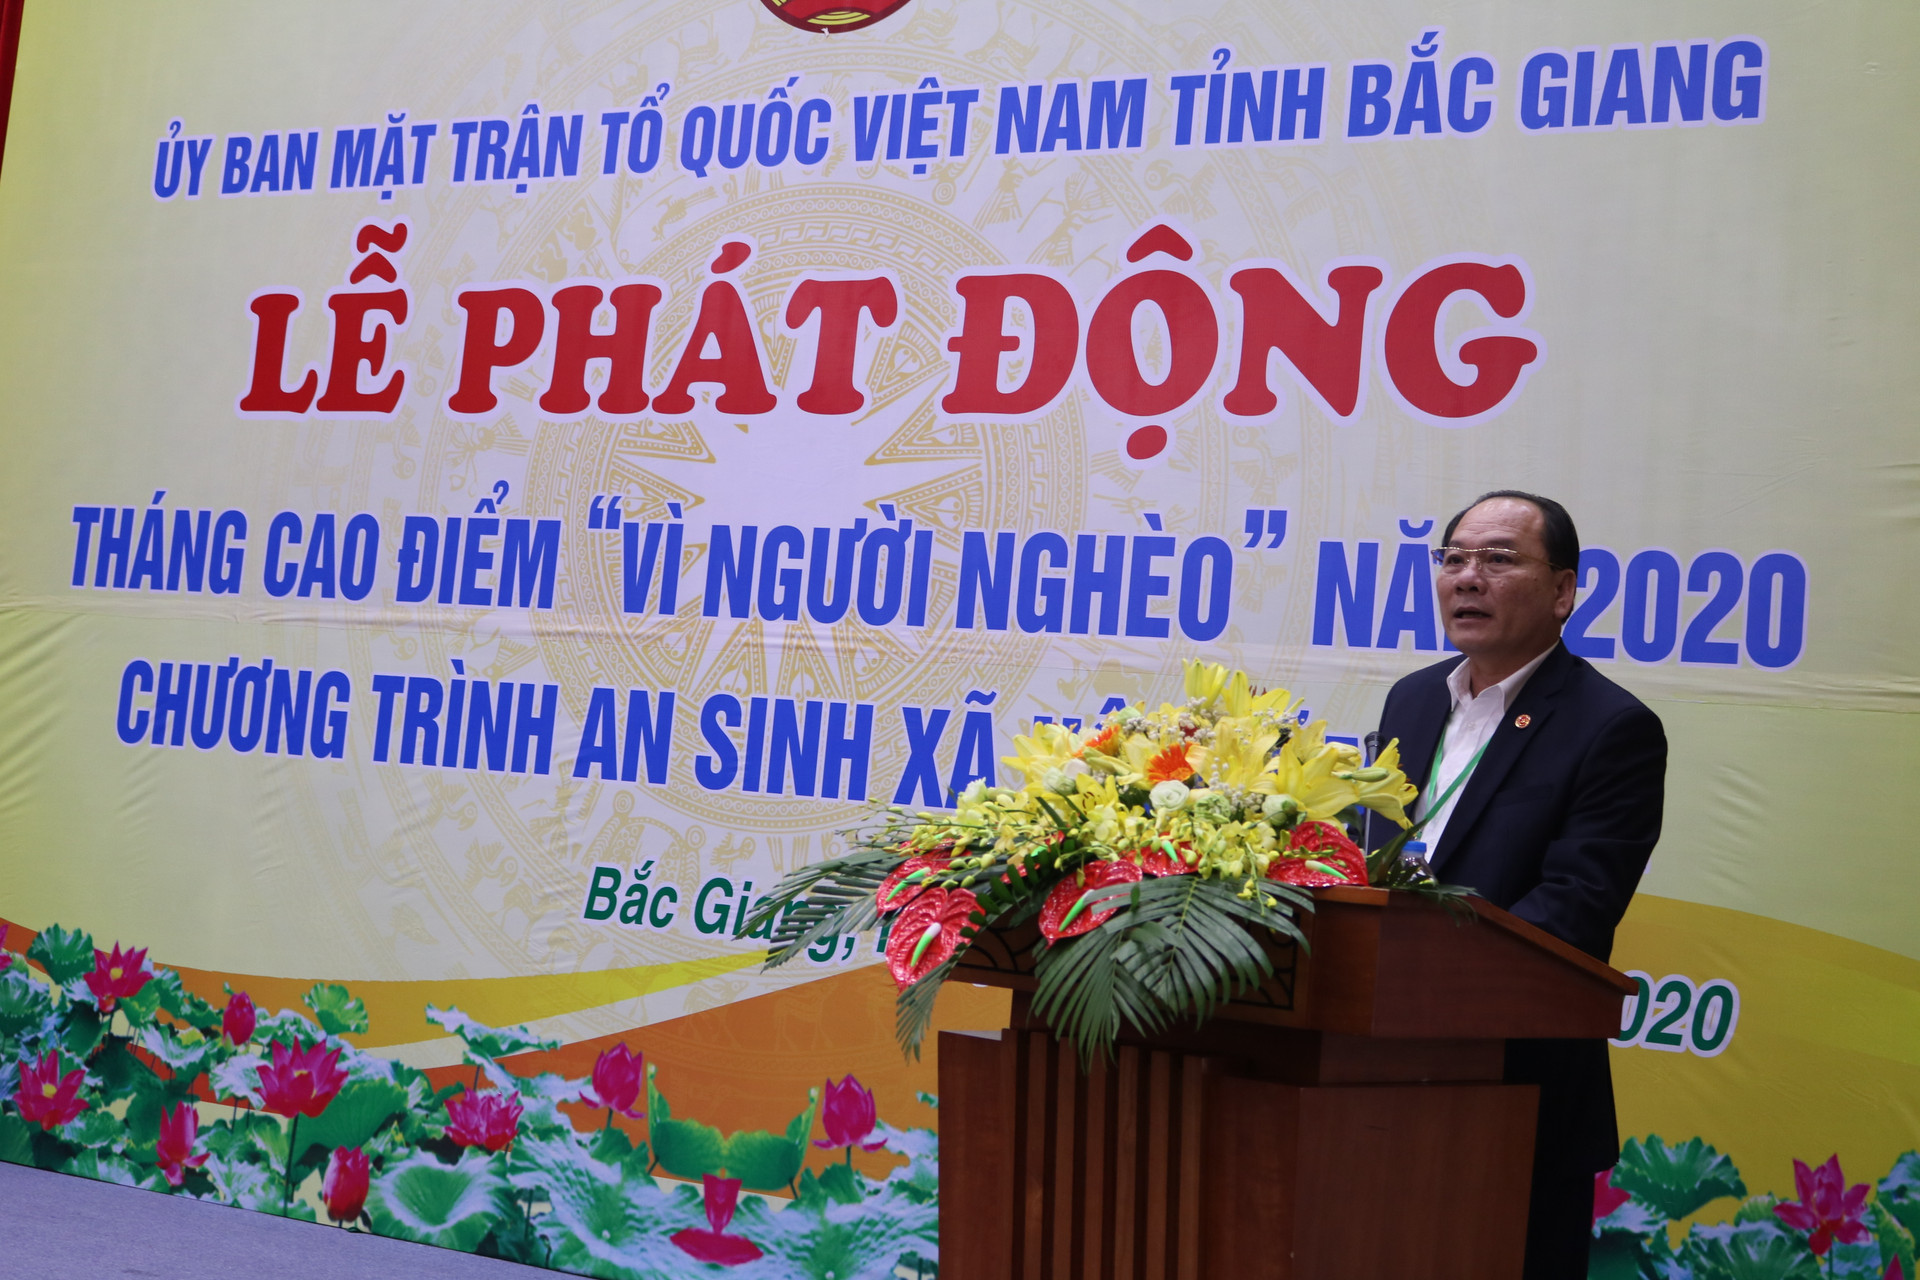 Ông Trần Công Thắng, Chủ tịch UBMTTQ tỉnh Bắc Giang phát động tháng cao điểm Vì người nghèo.